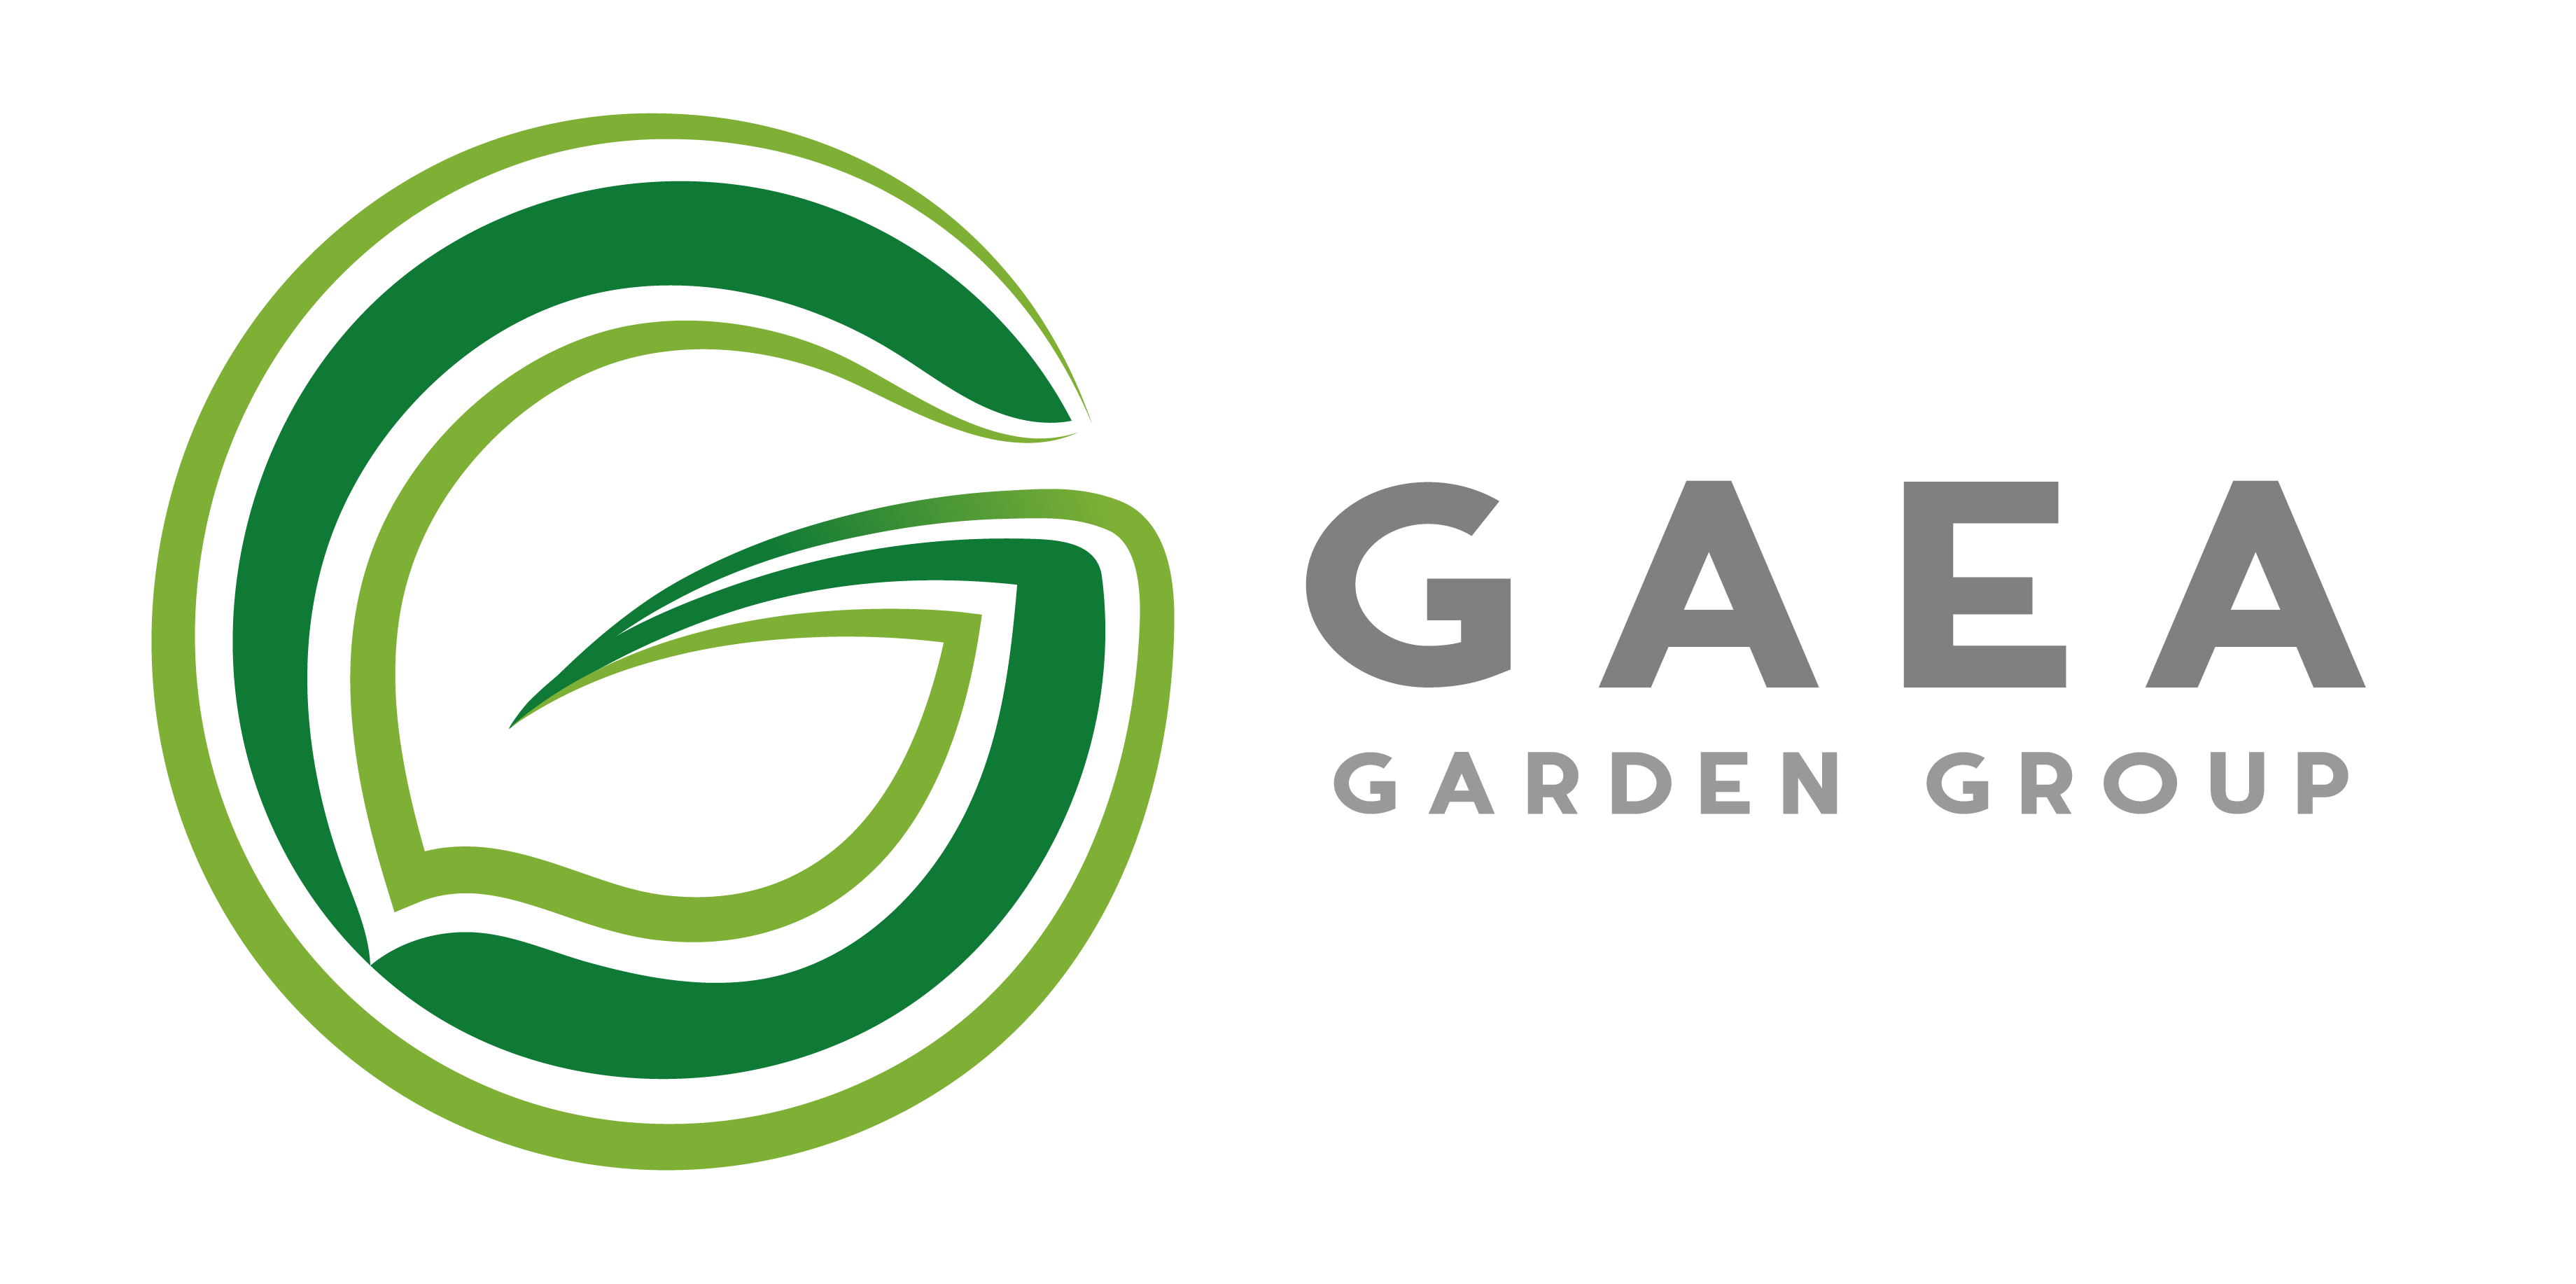 The Gaea Garden Group Logo